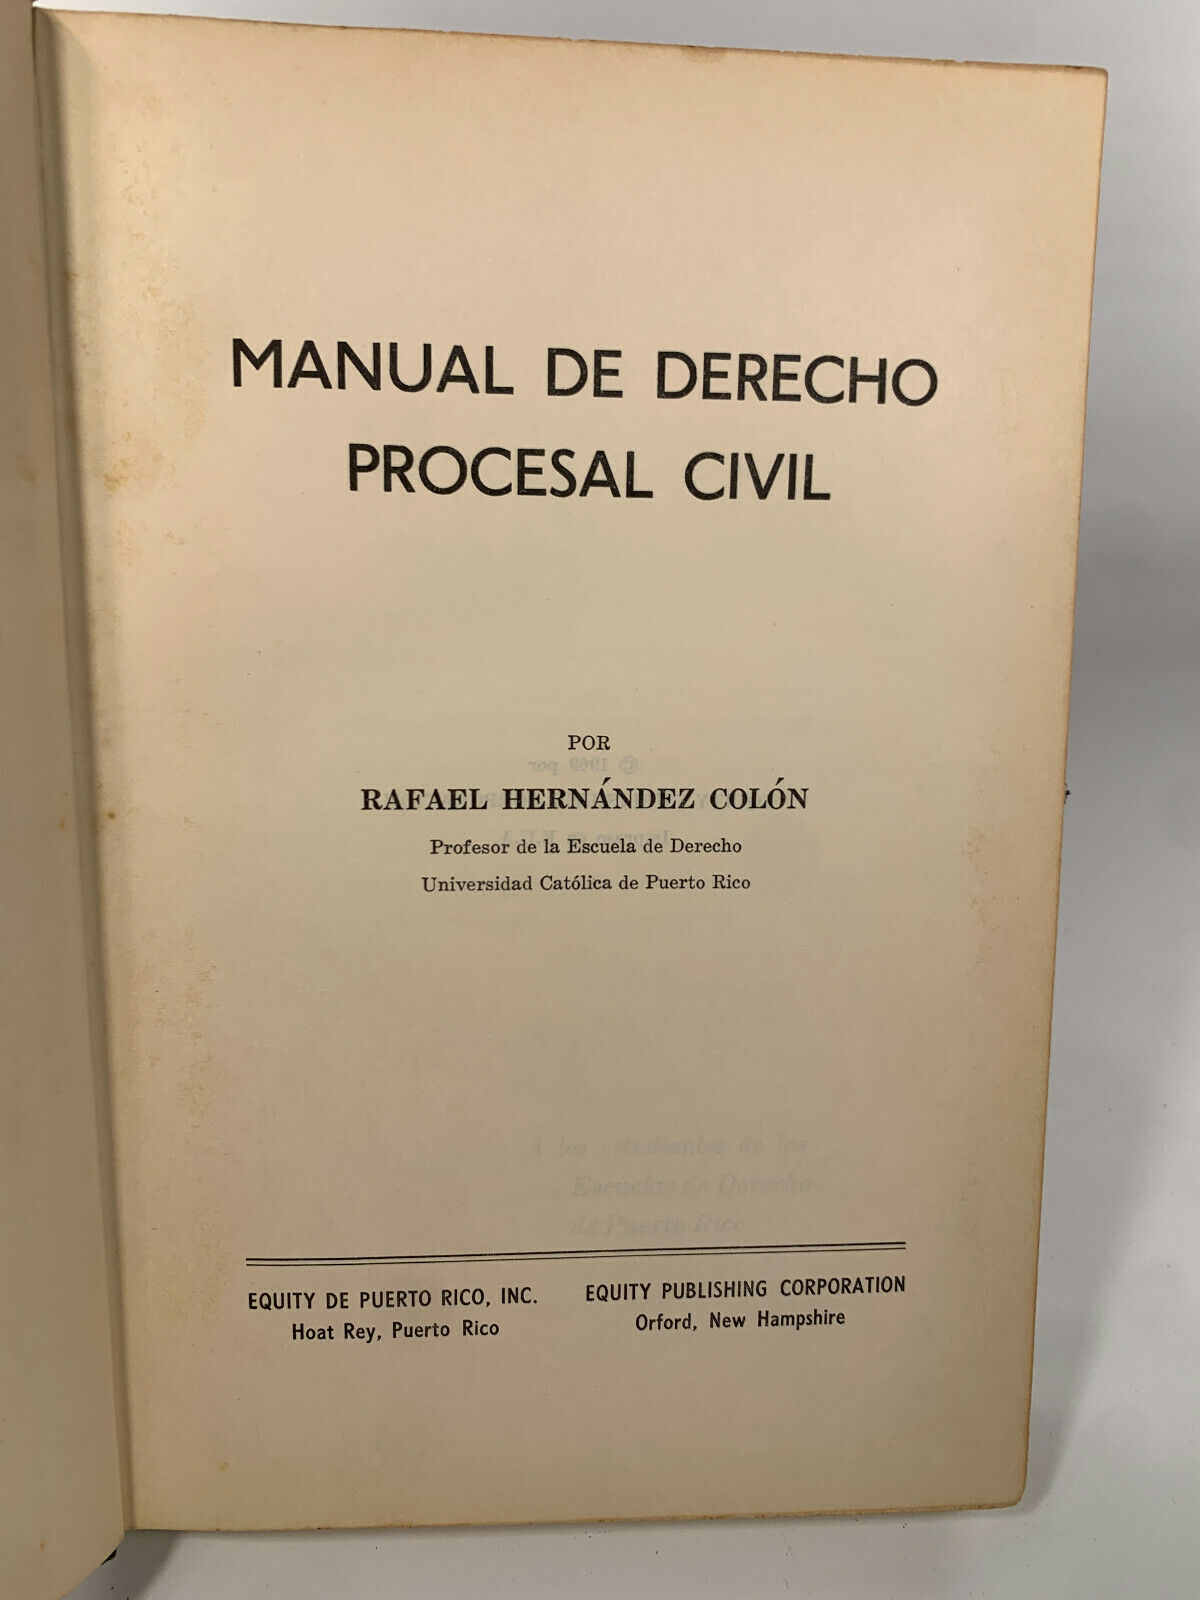 Estudios de Derecho: Procesal Civil, Notarial, Sucesorio Puertorriqueno